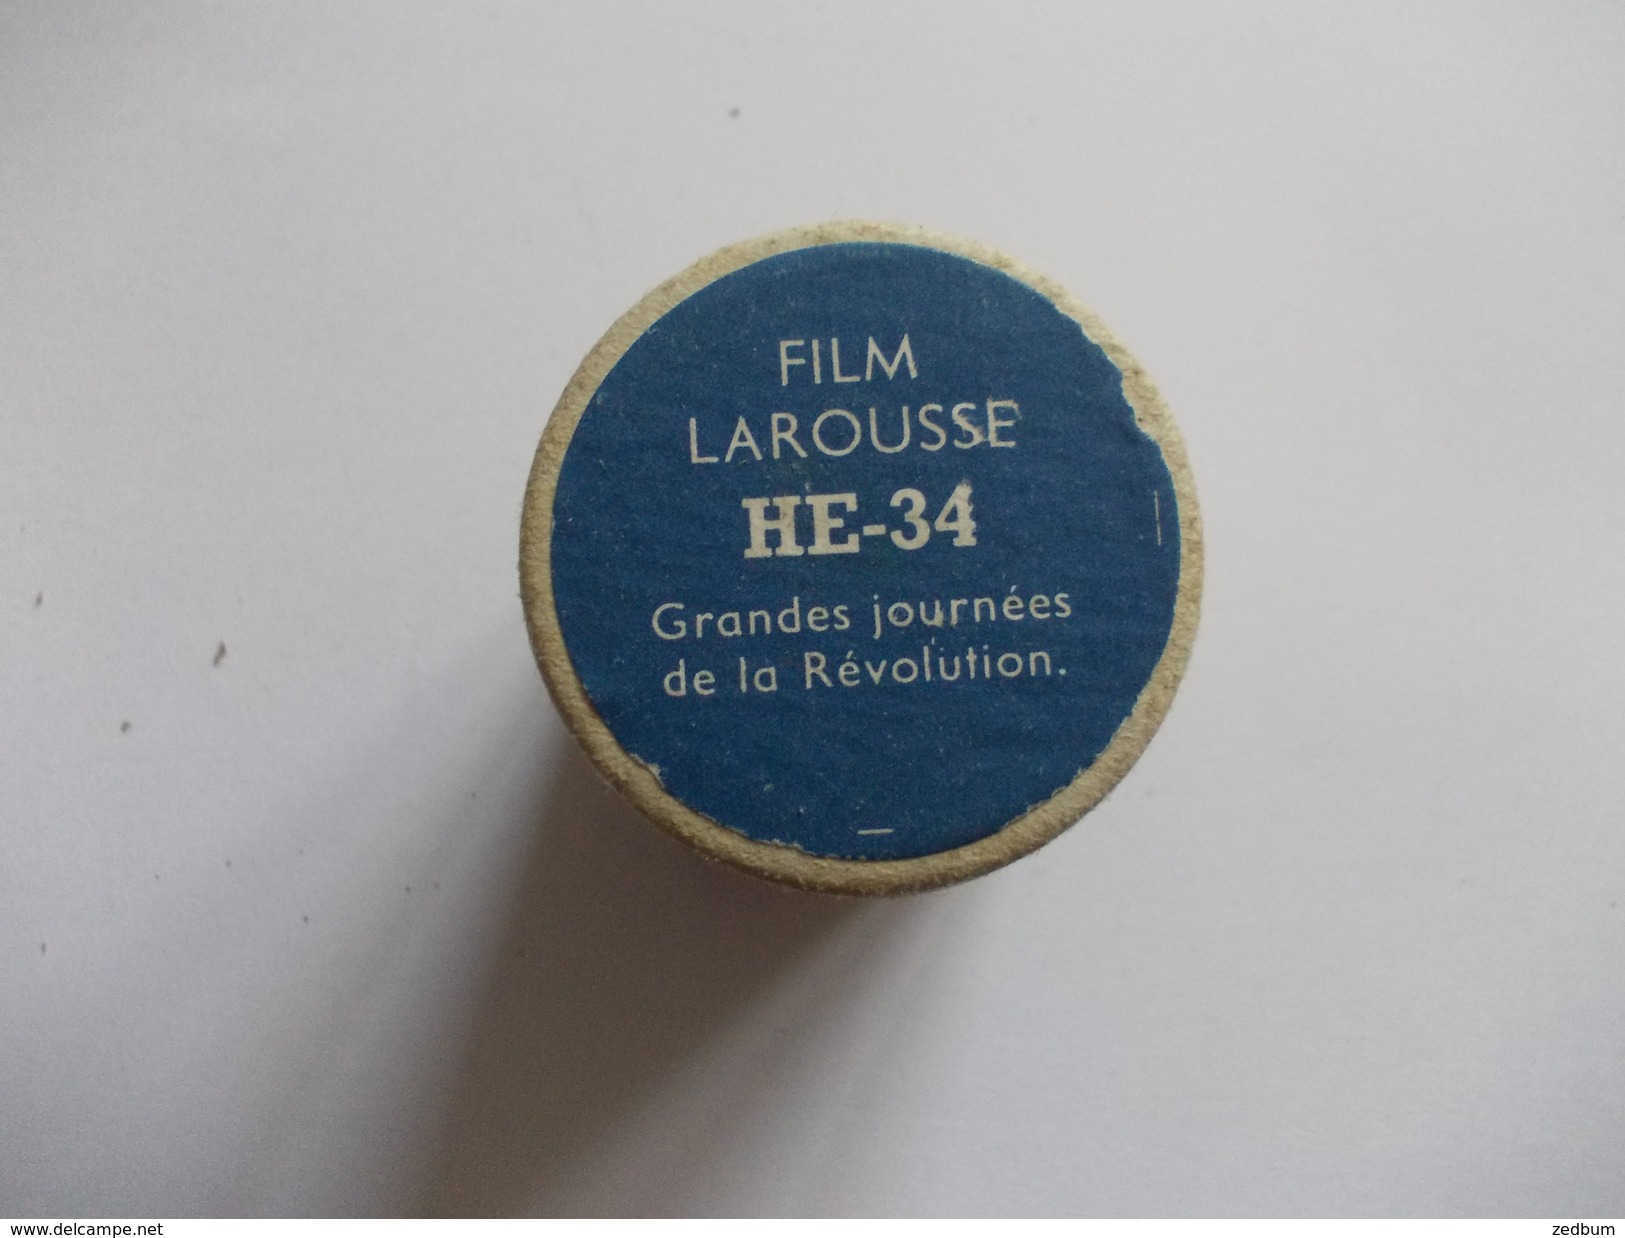 FILM FIXE Larousse HE-34 Grandes Journées De La Révolution - 35mm -16mm - 9,5+8+S8mm Film Rolls